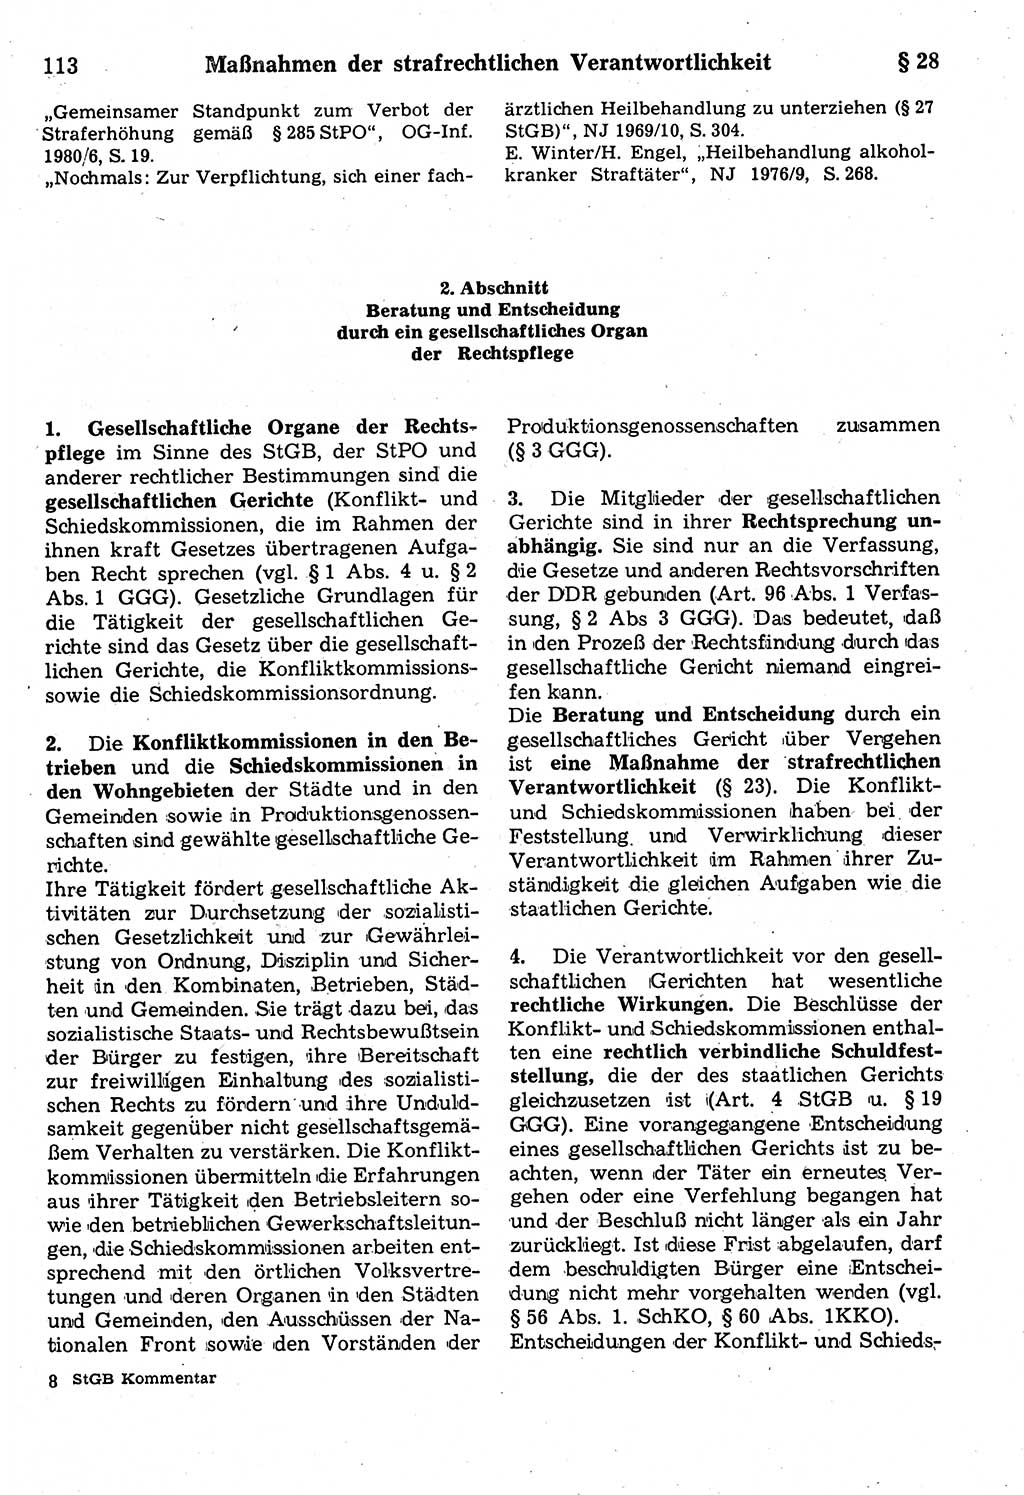 Strafrecht der Deutschen Demokratischen Republik (DDR), Kommentar zum Strafgesetzbuch (StGB) 1987, Seite 113 (Strafr. DDR Komm. StGB 1987, S. 113)